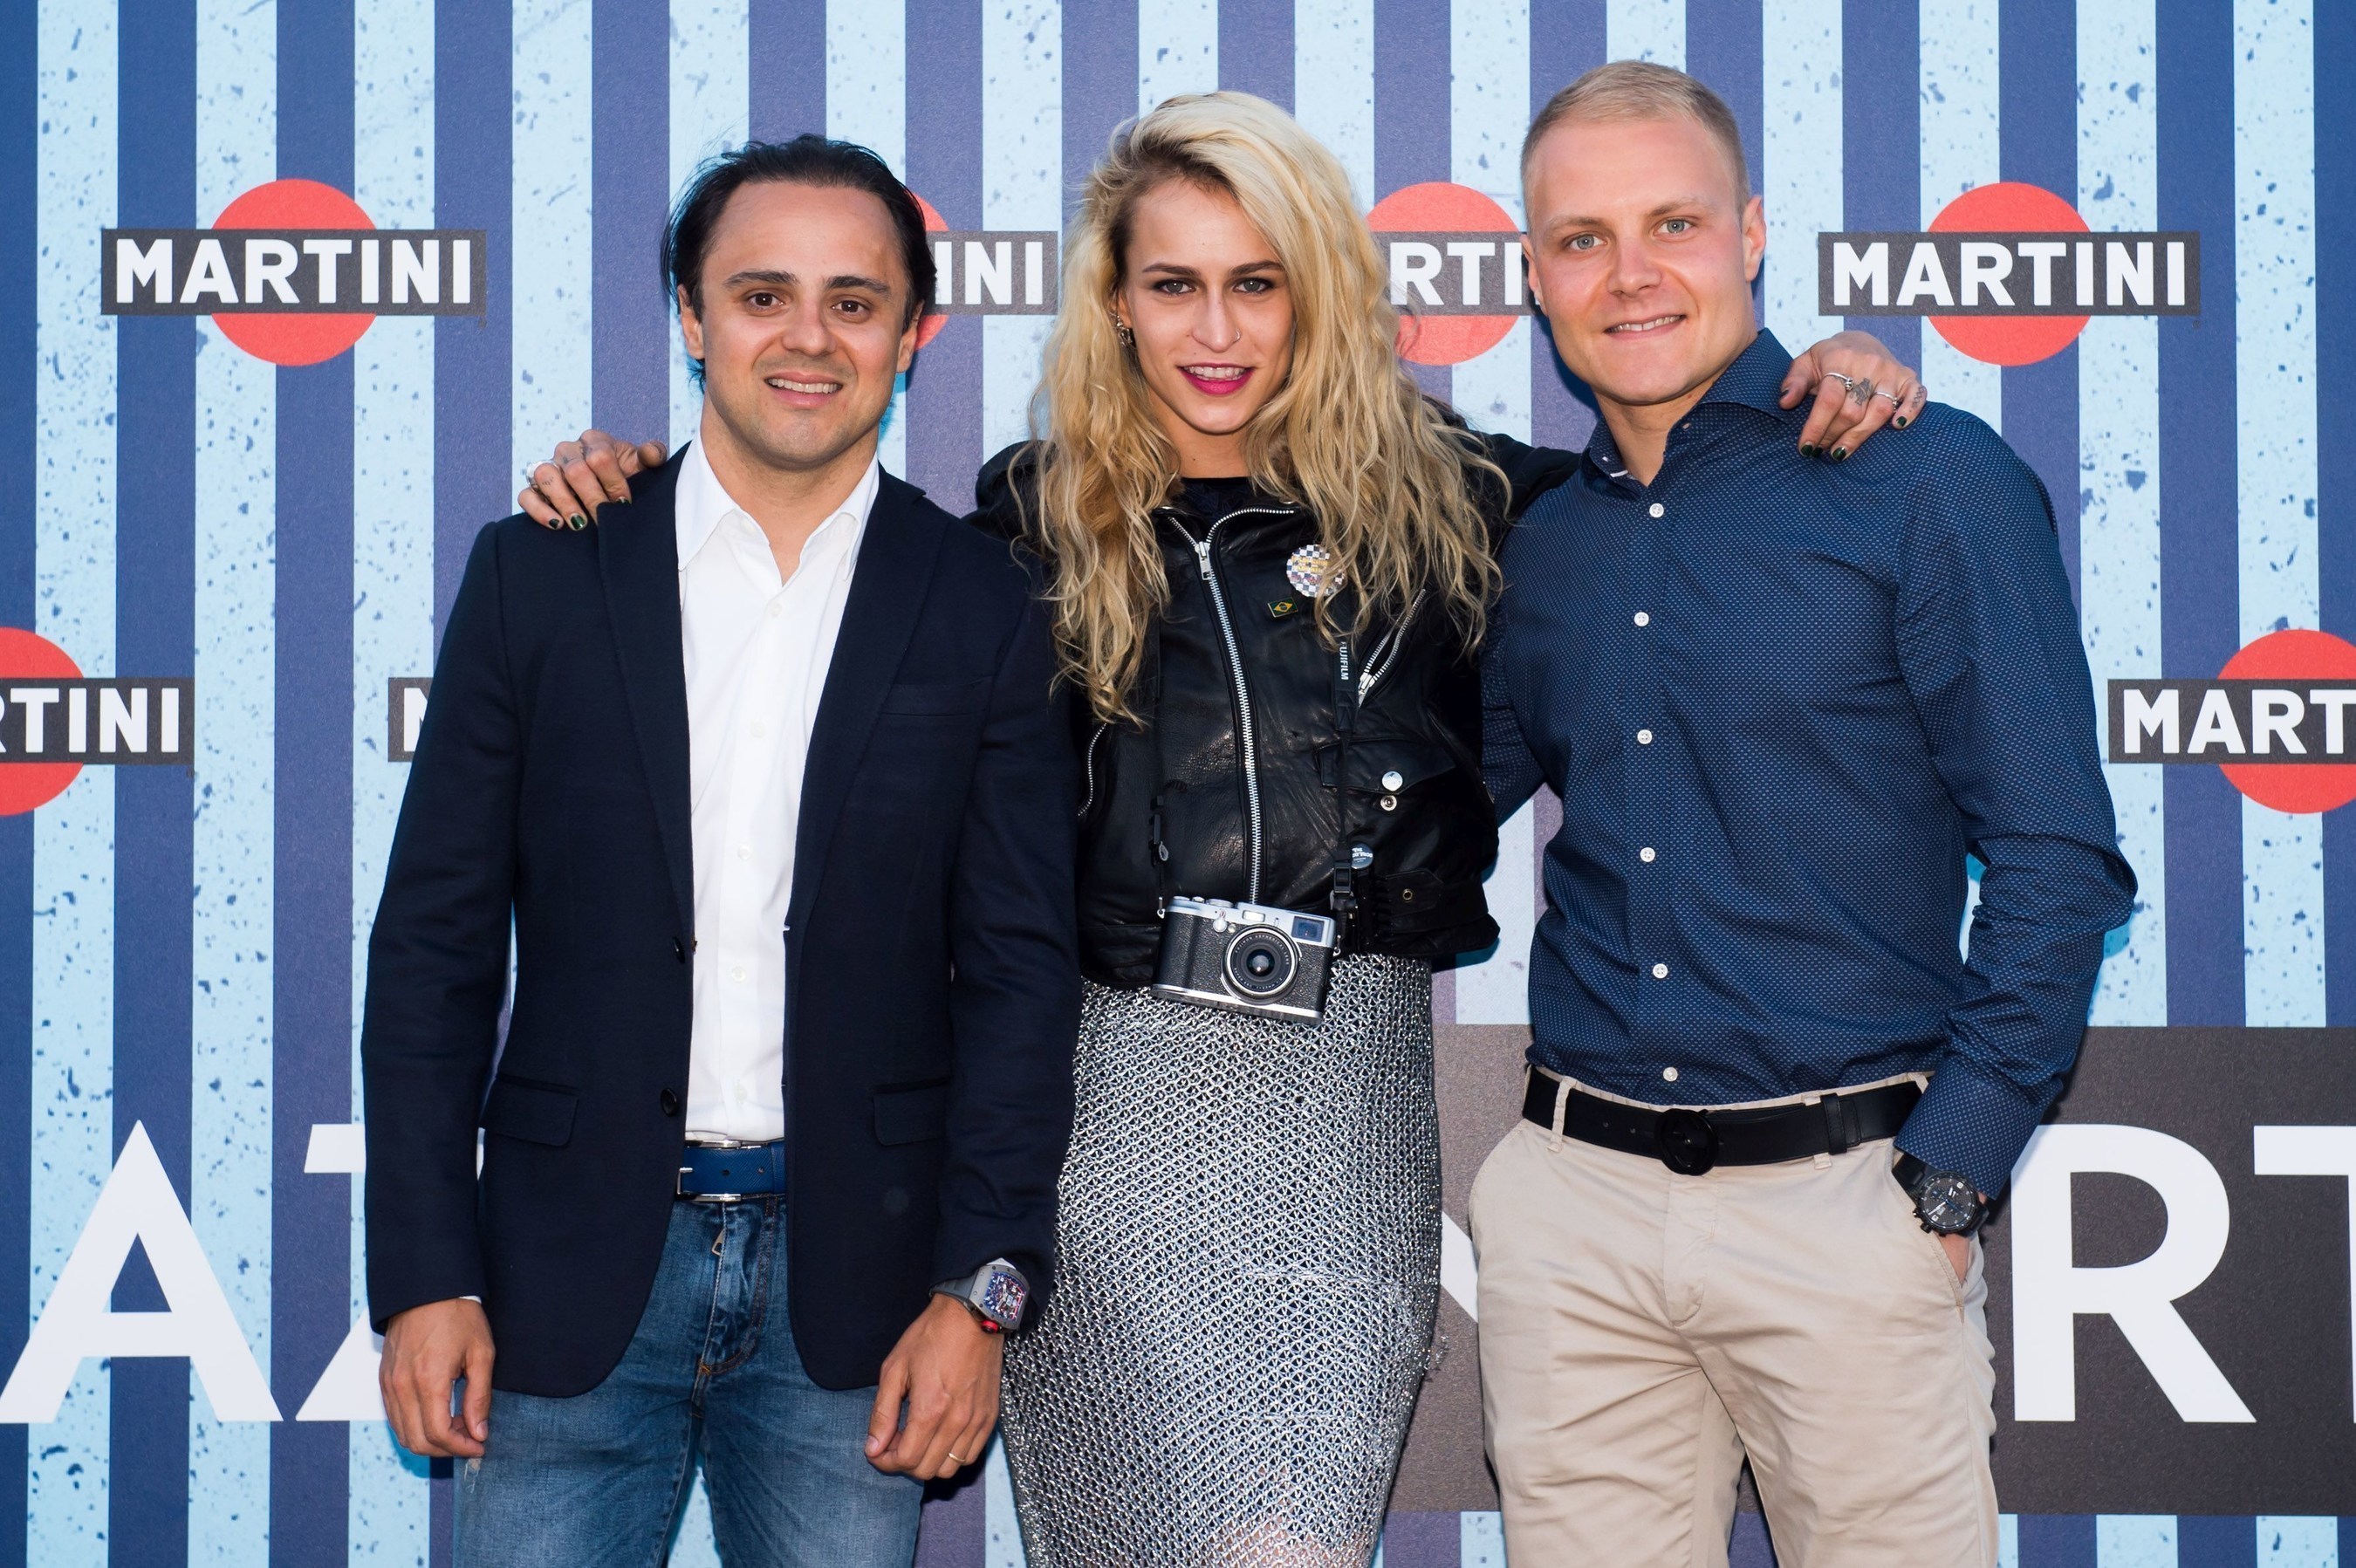 Williams MARTINI Racing drivers Felipe Massa and Valtteri Bottas join Alice Dellal as she’s announced the 2016 MARTINI Race Photographer at the Terrazza MARTINI in Barcelona